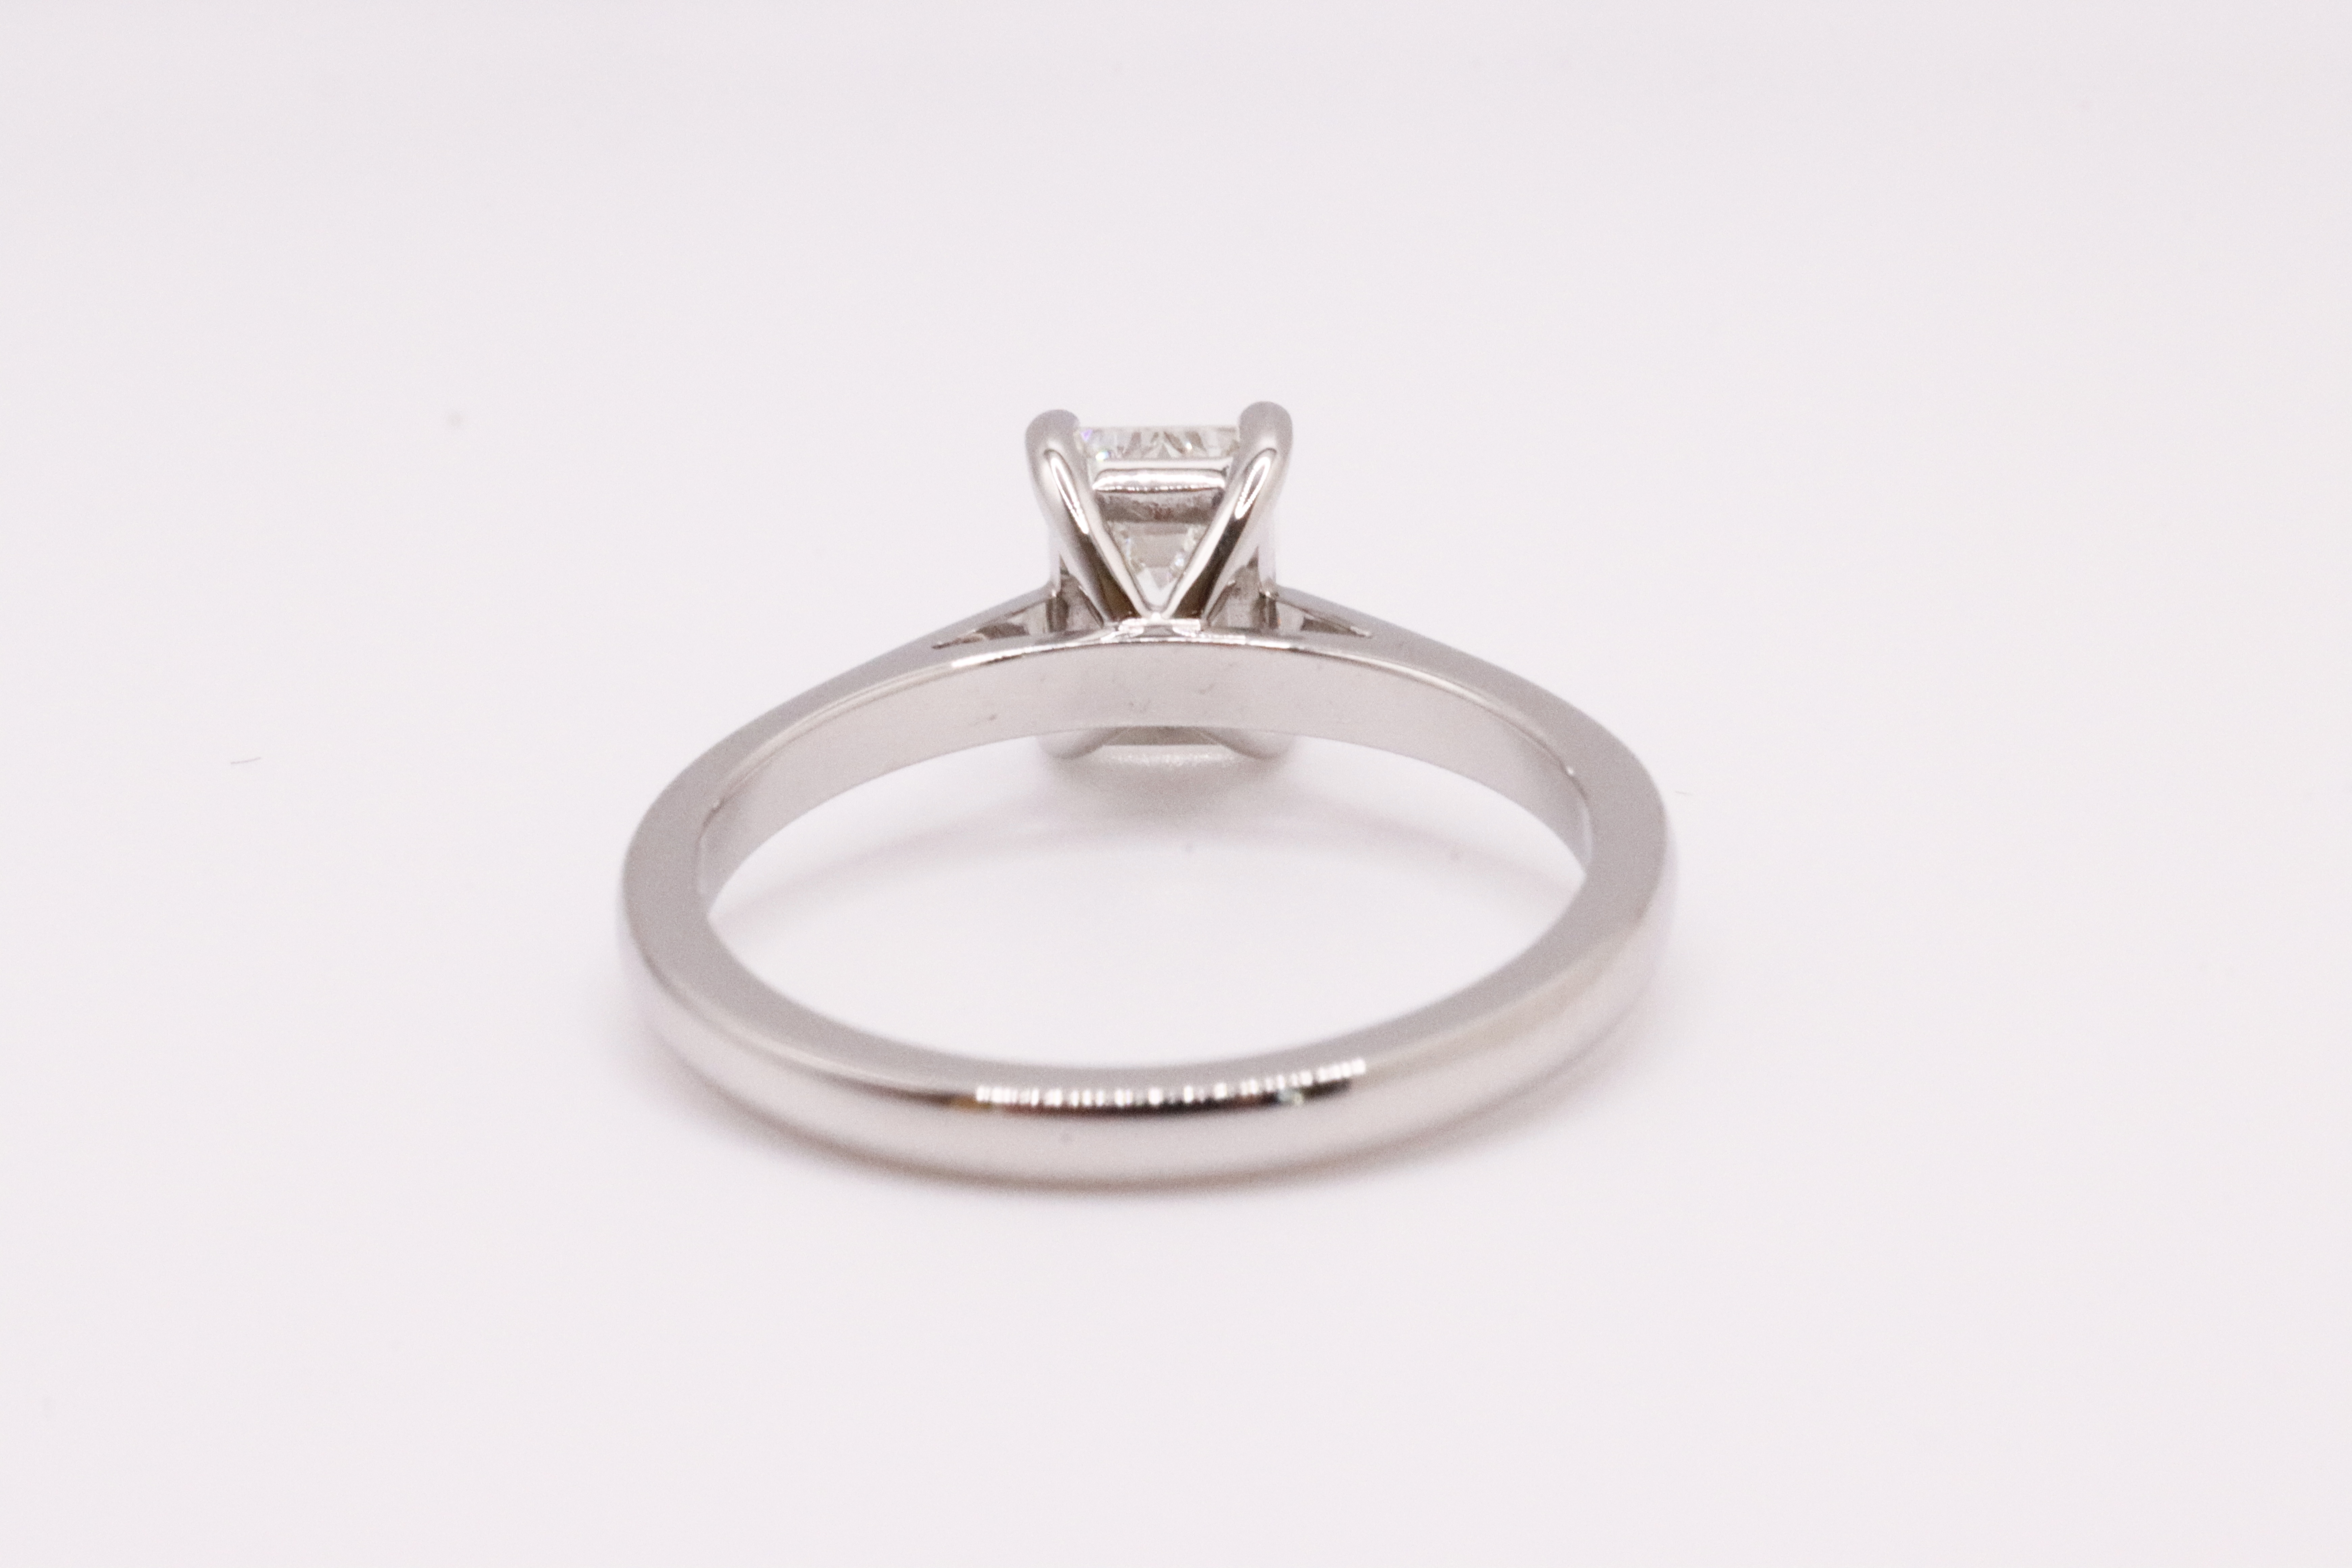 Emerald Cut Natural Diamond Platinum Ring 1.00 Carat D Colour VS1 Clarity EX EX - GIA - Image 4 of 6